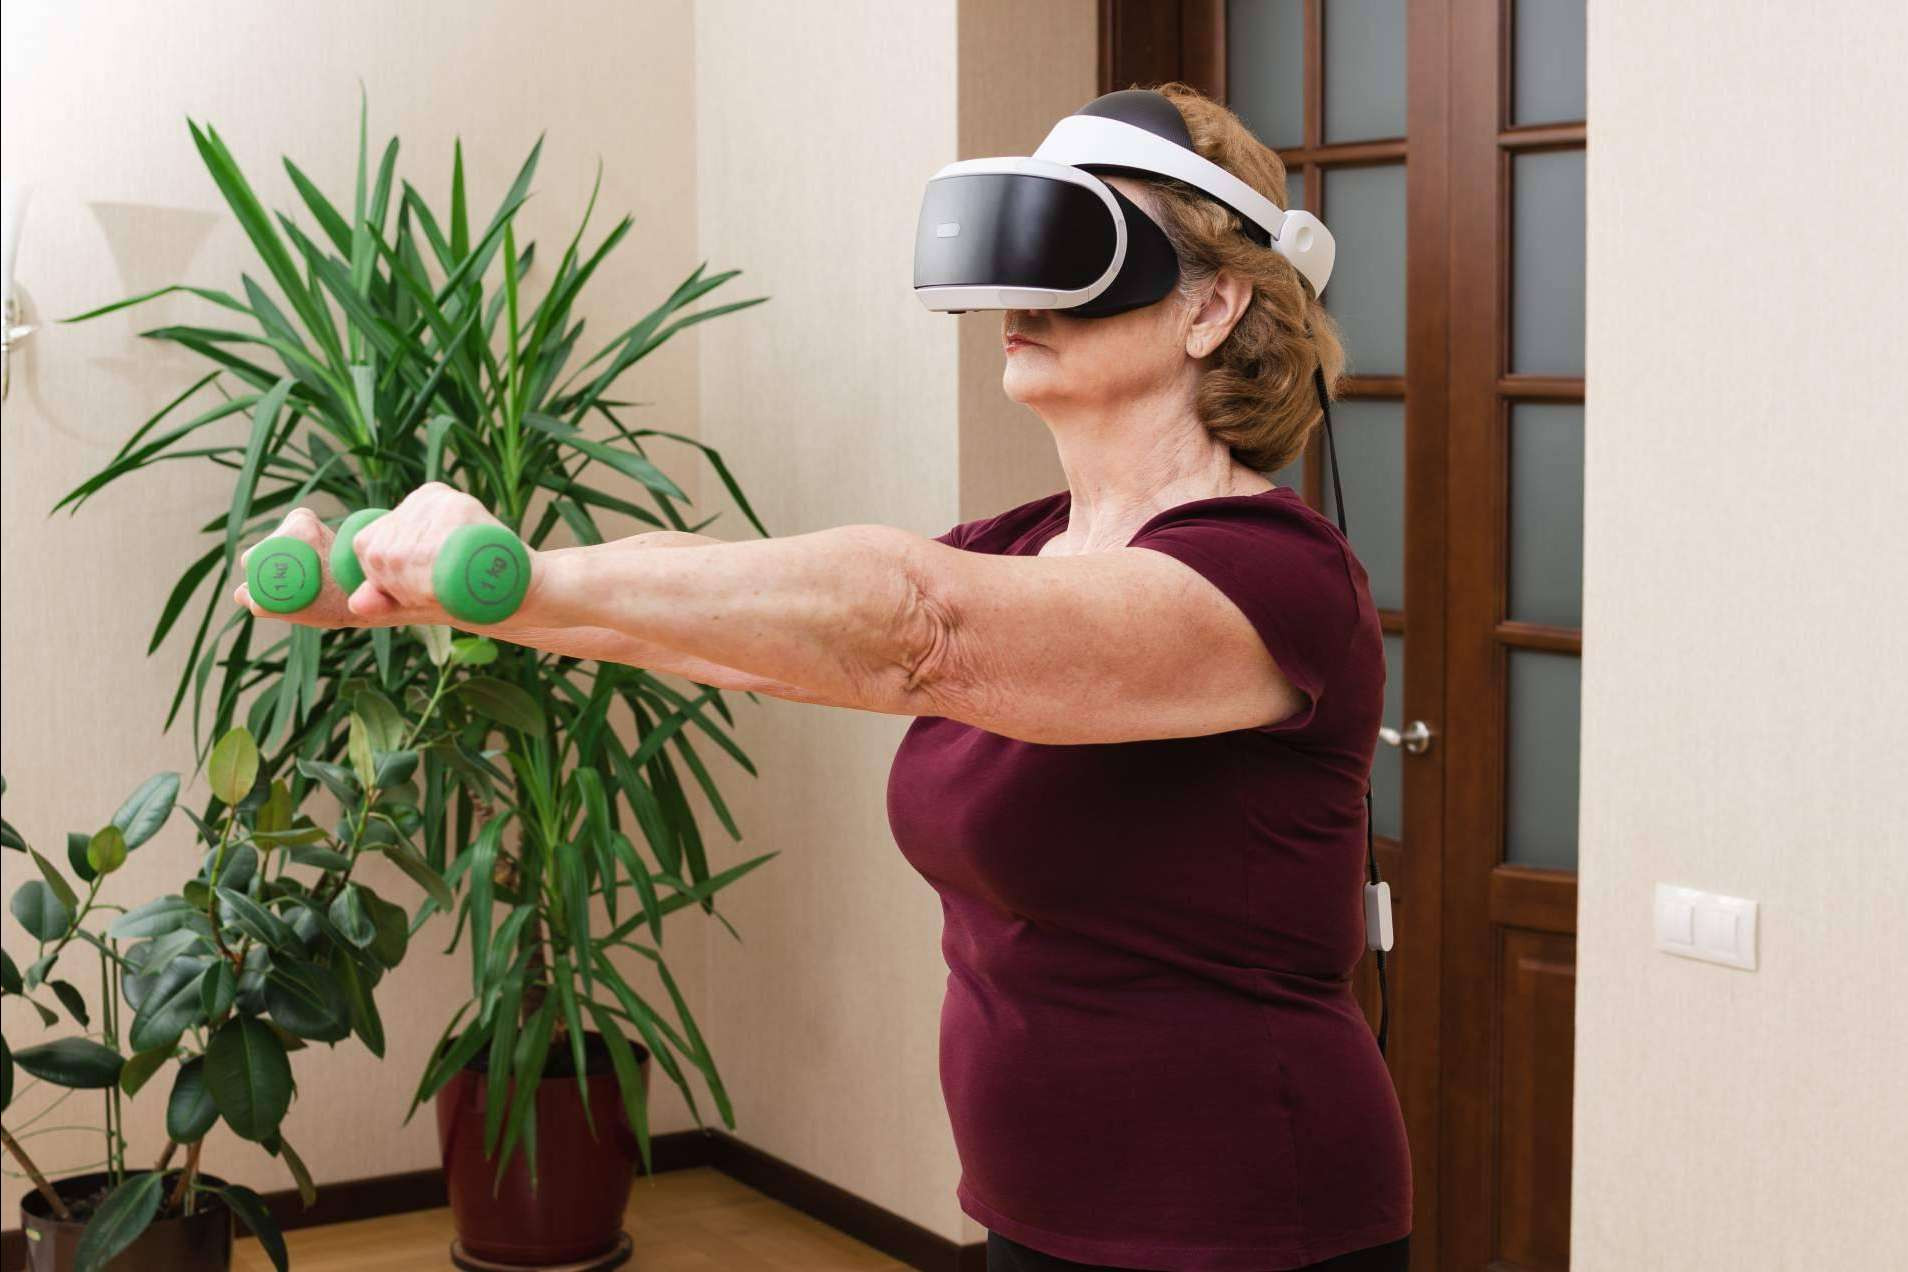  RESETXR en Barcelona ofrece entretenimiento y terapias innovadoras para mayores en realidad virtual 